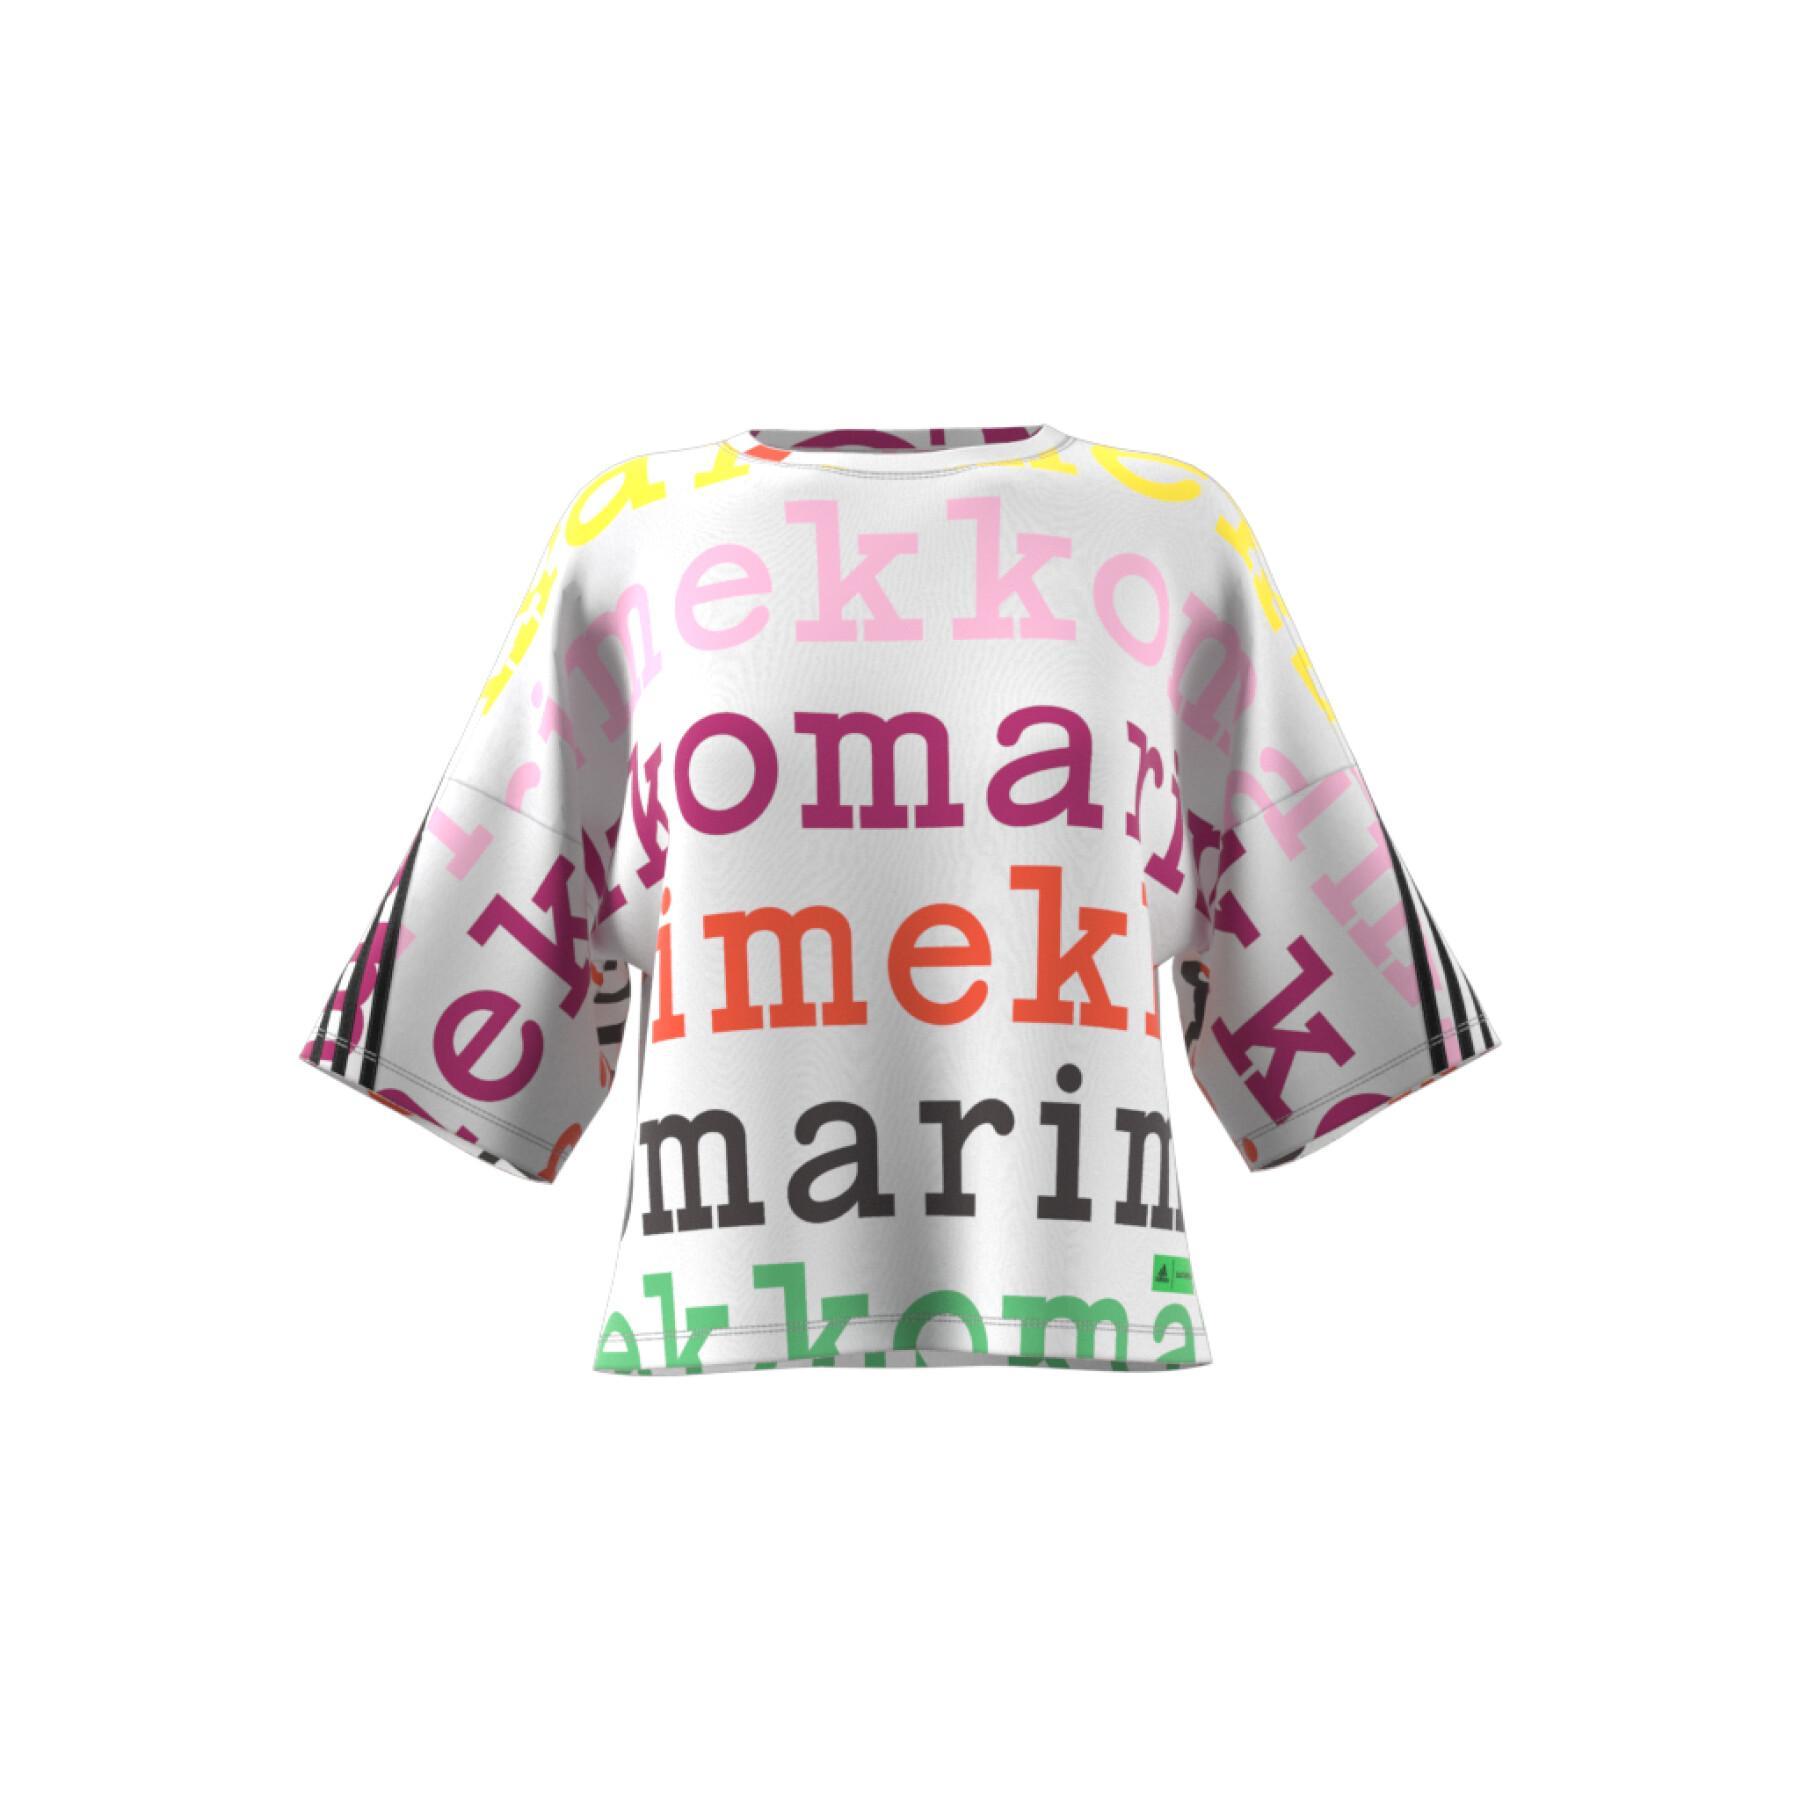 T-shirt femme adidas Marimekko x